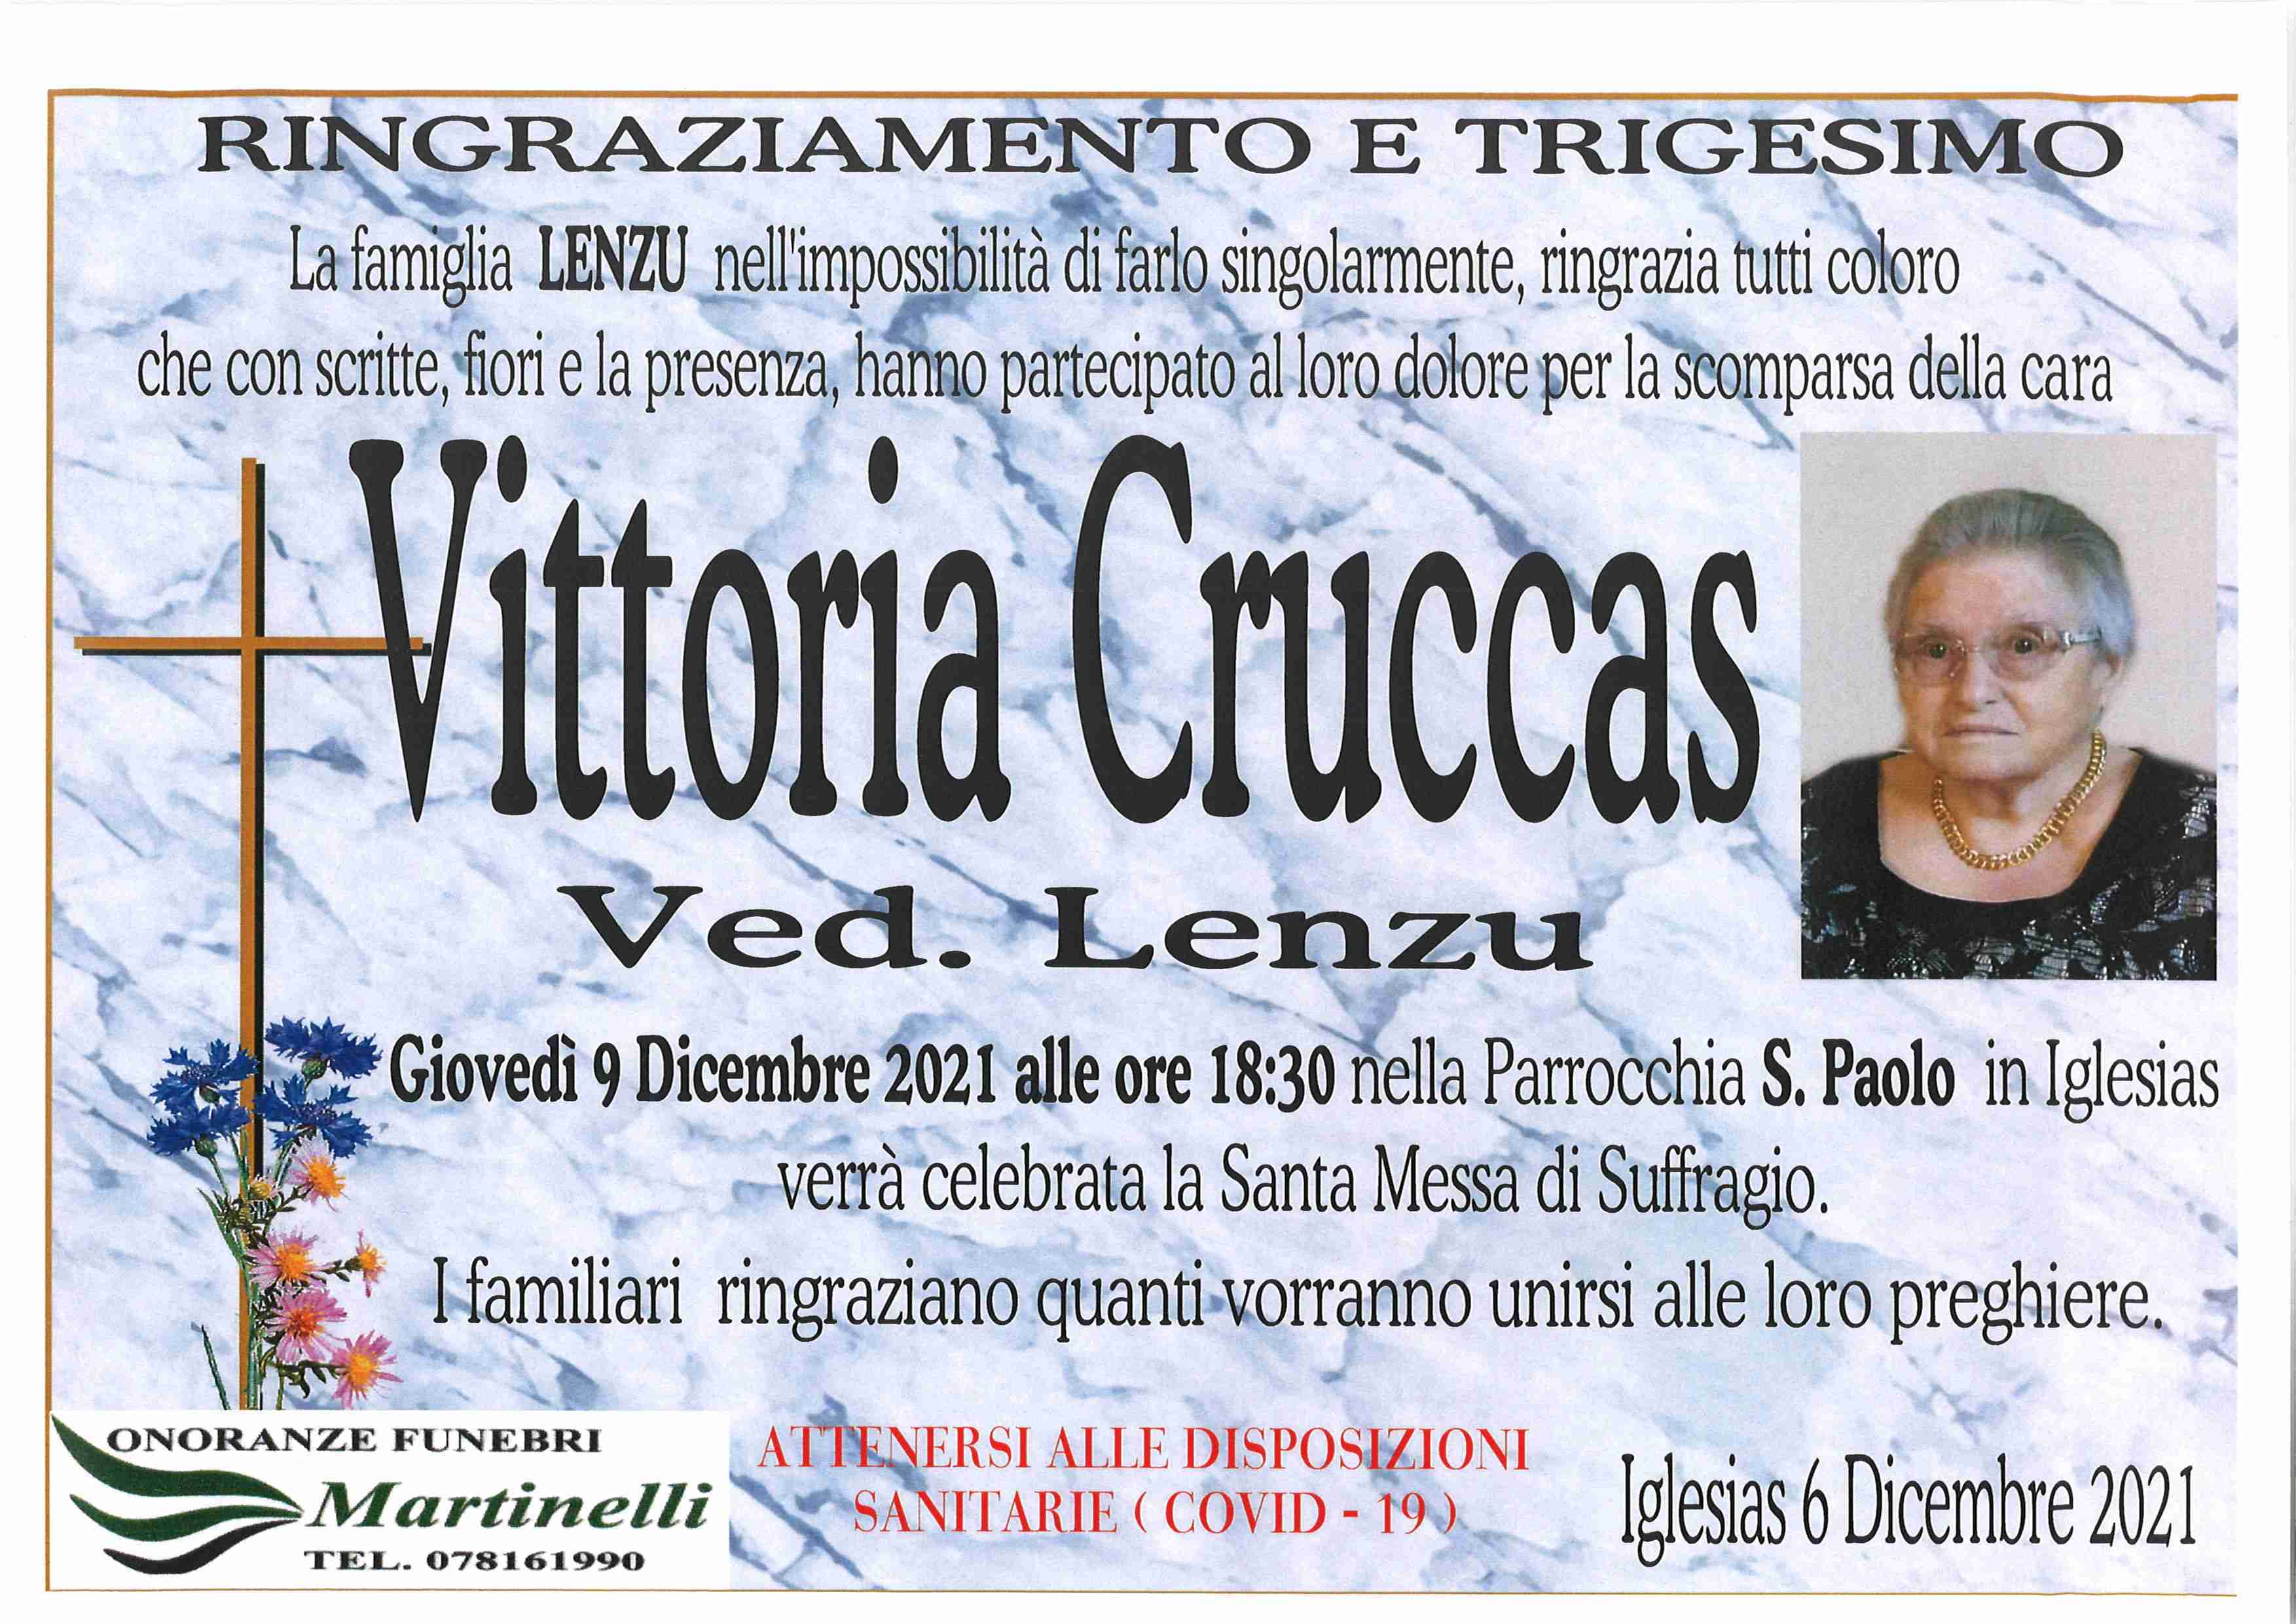 Vittoria Cruccas